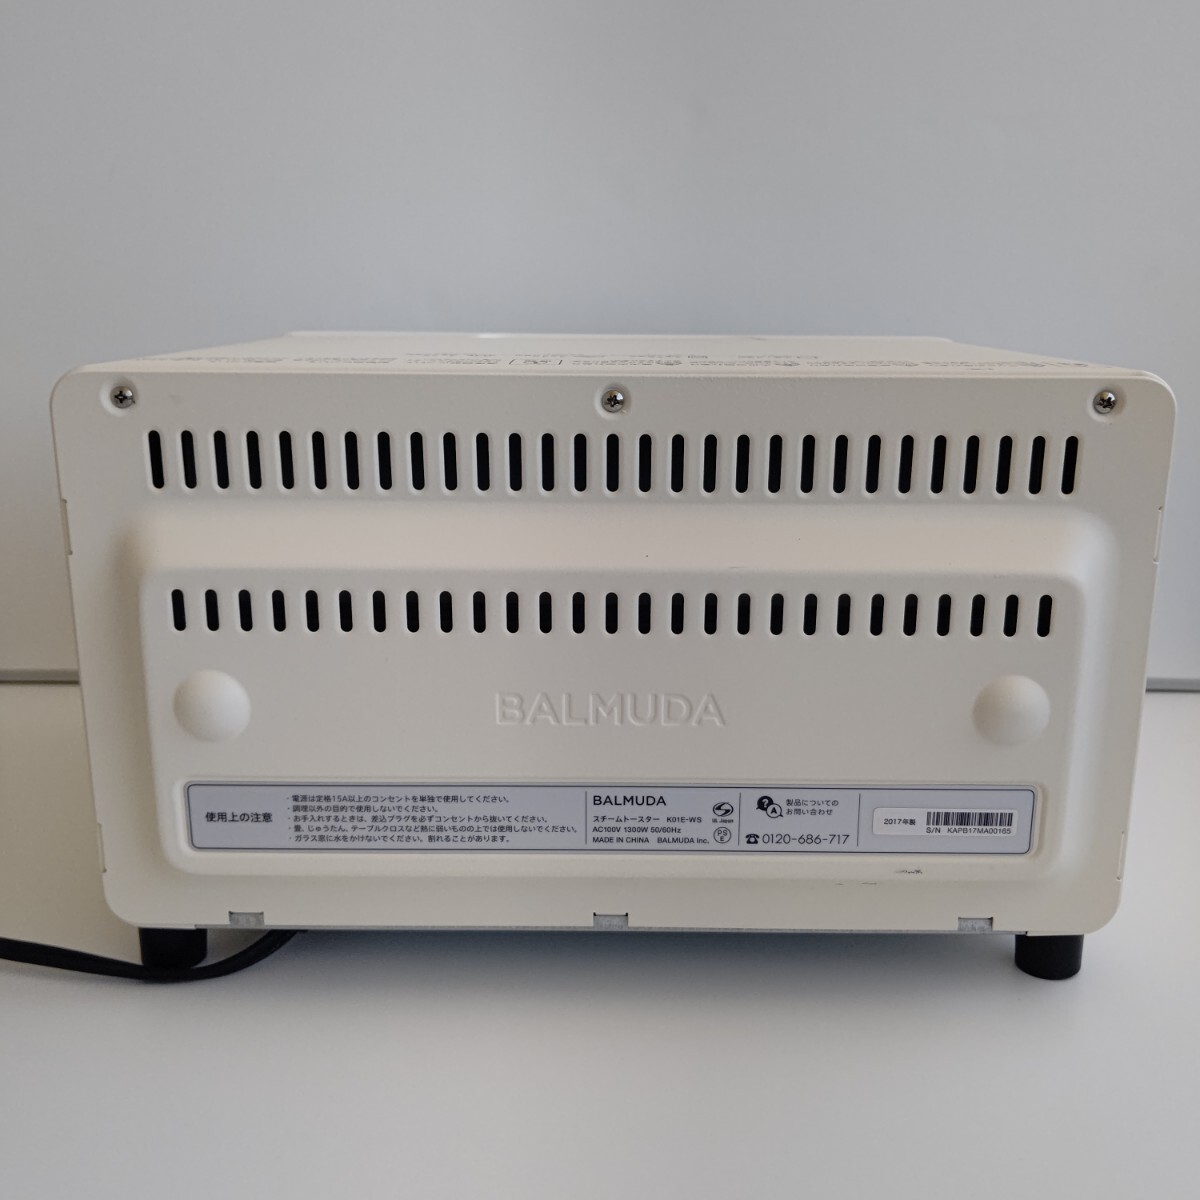 BALMUDA bar Mu da toaster K01E-WS white 